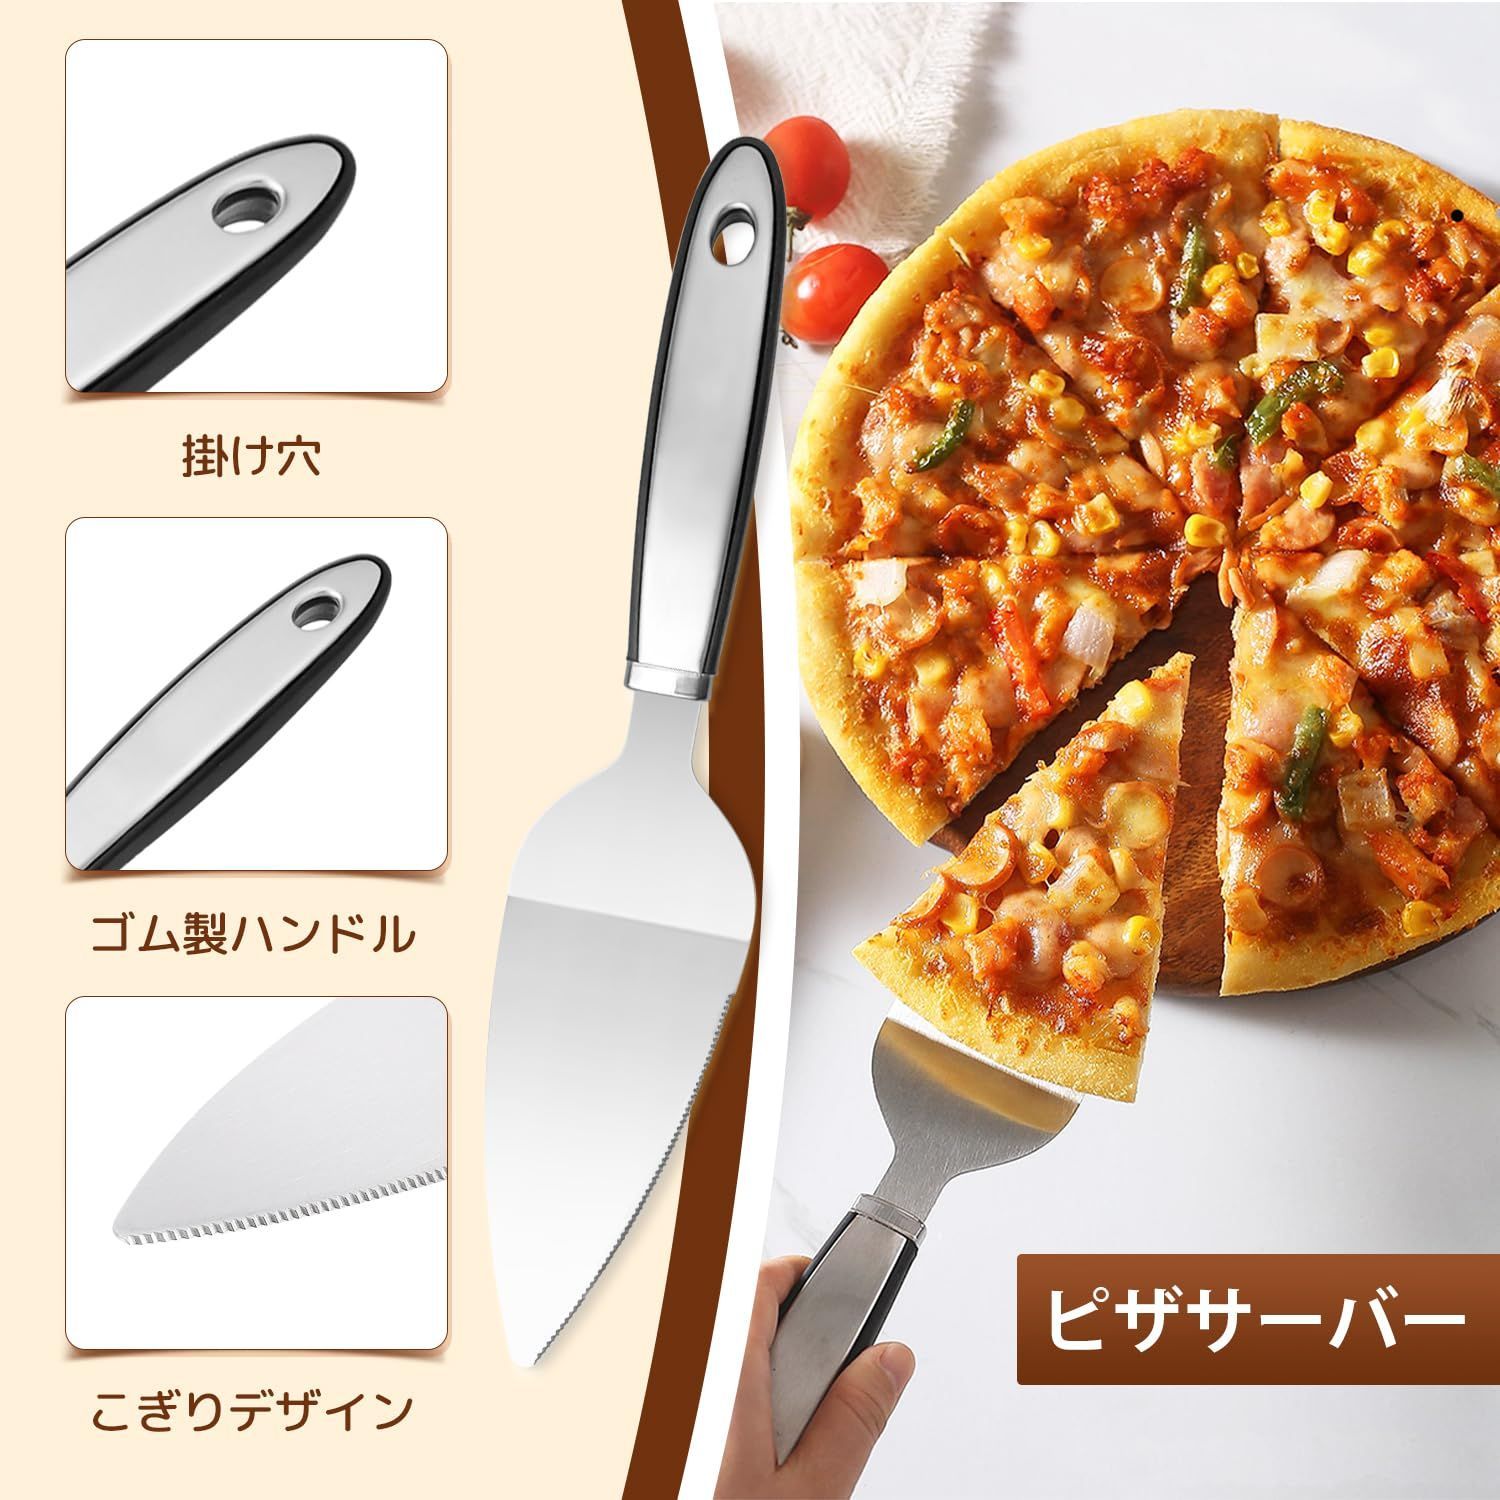 ピザカッター ステンレス製 2点セット ピザナイフ 業務用 家庭用 指保護装置 滑りにくい ピザ ケーキ カッター ピザサーバー ピザ窯キット ケーキ